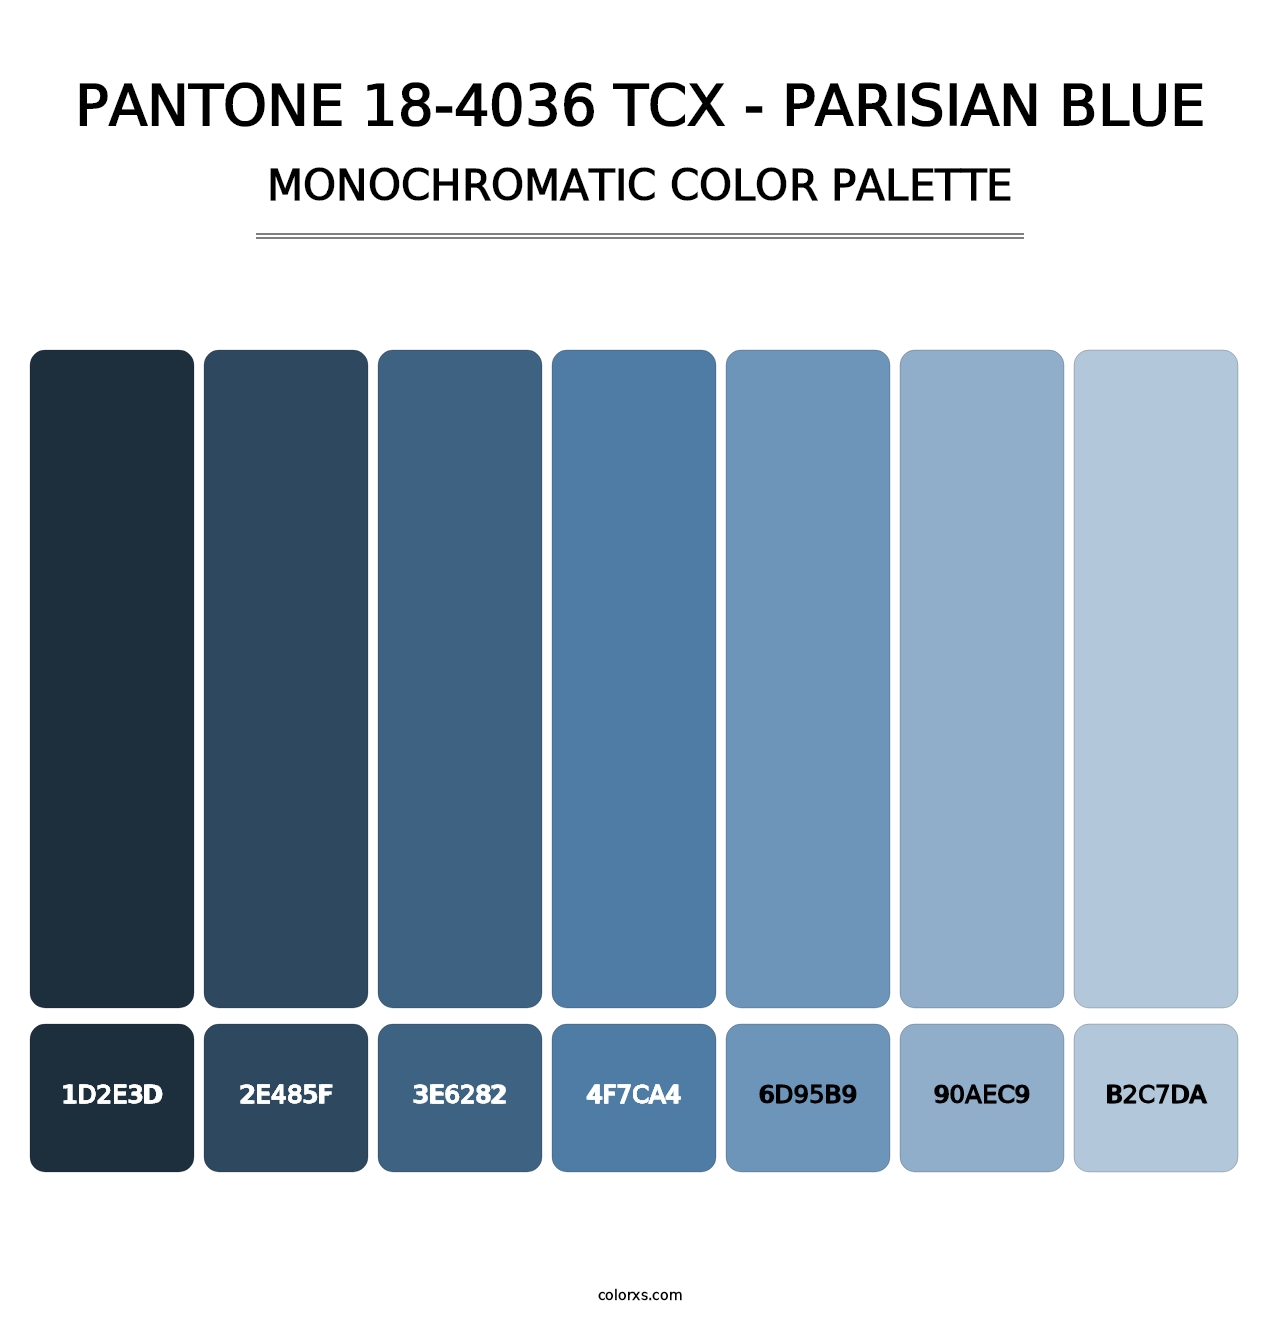 PANTONE 18-4036 TCX - Parisian Blue - Monochromatic Color Palette